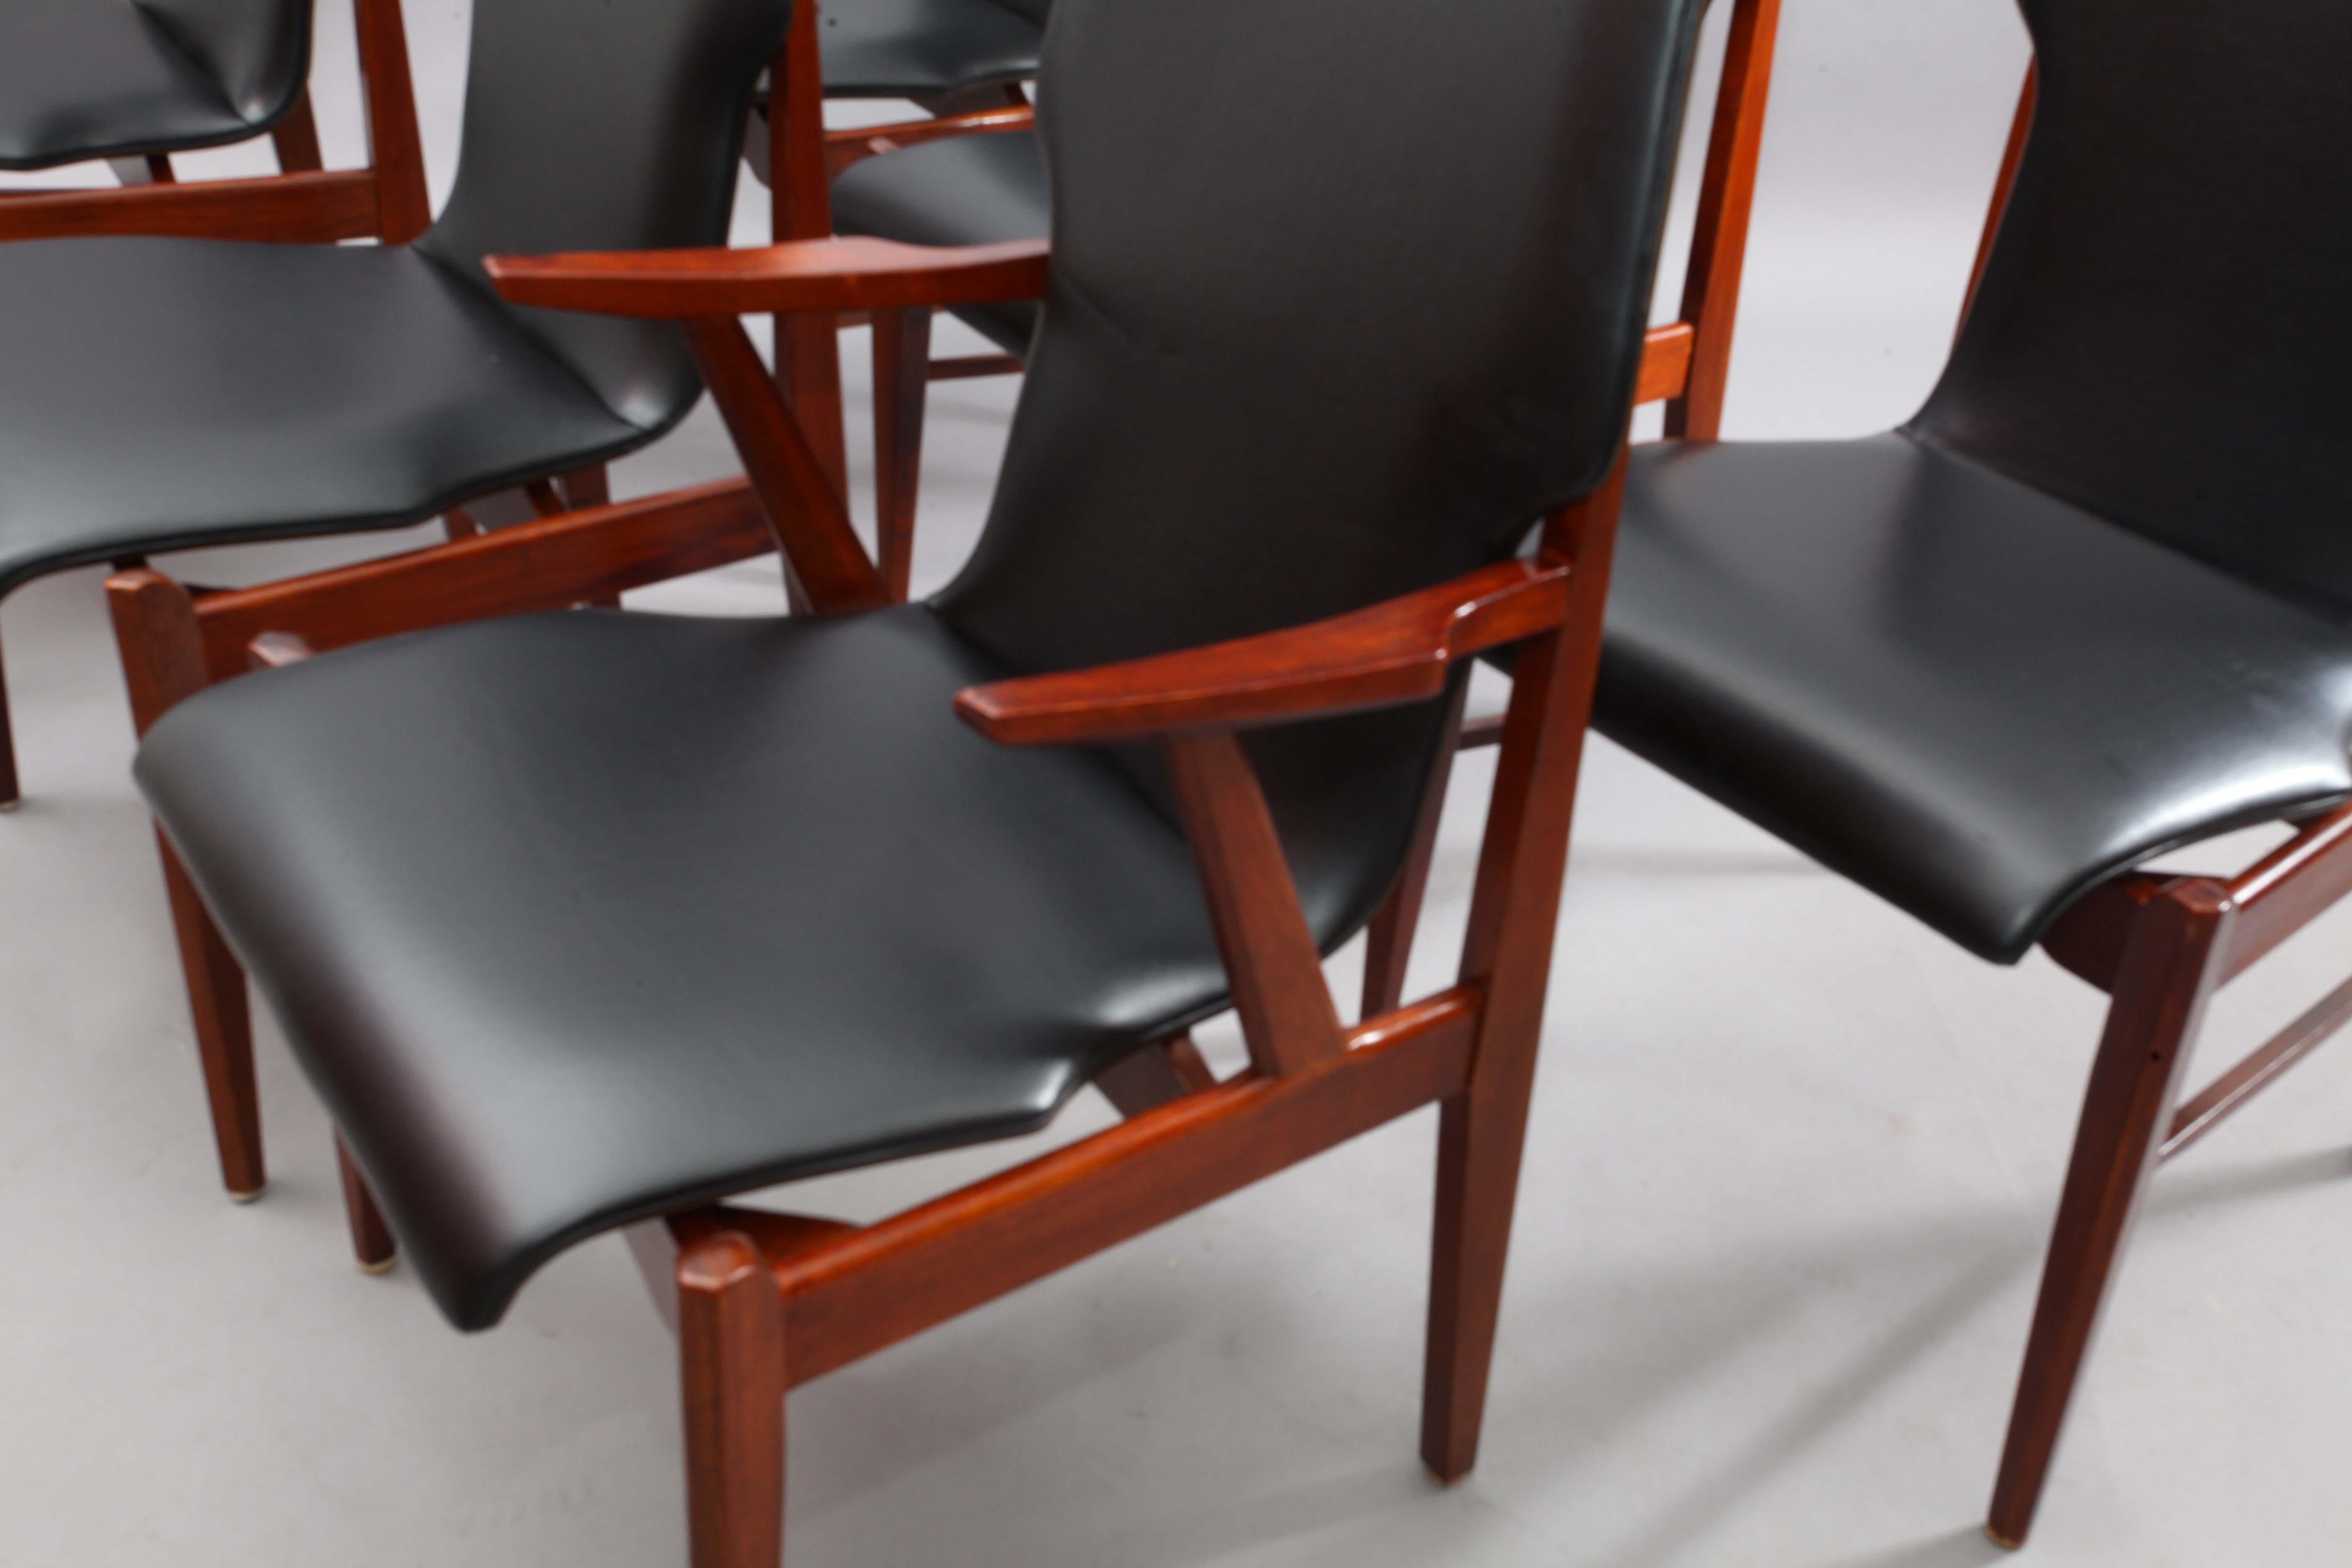 5 teak wood chairs + 1 teak wood armchair
Denmark, 1950
Black leatherette,
Solid teak wood.